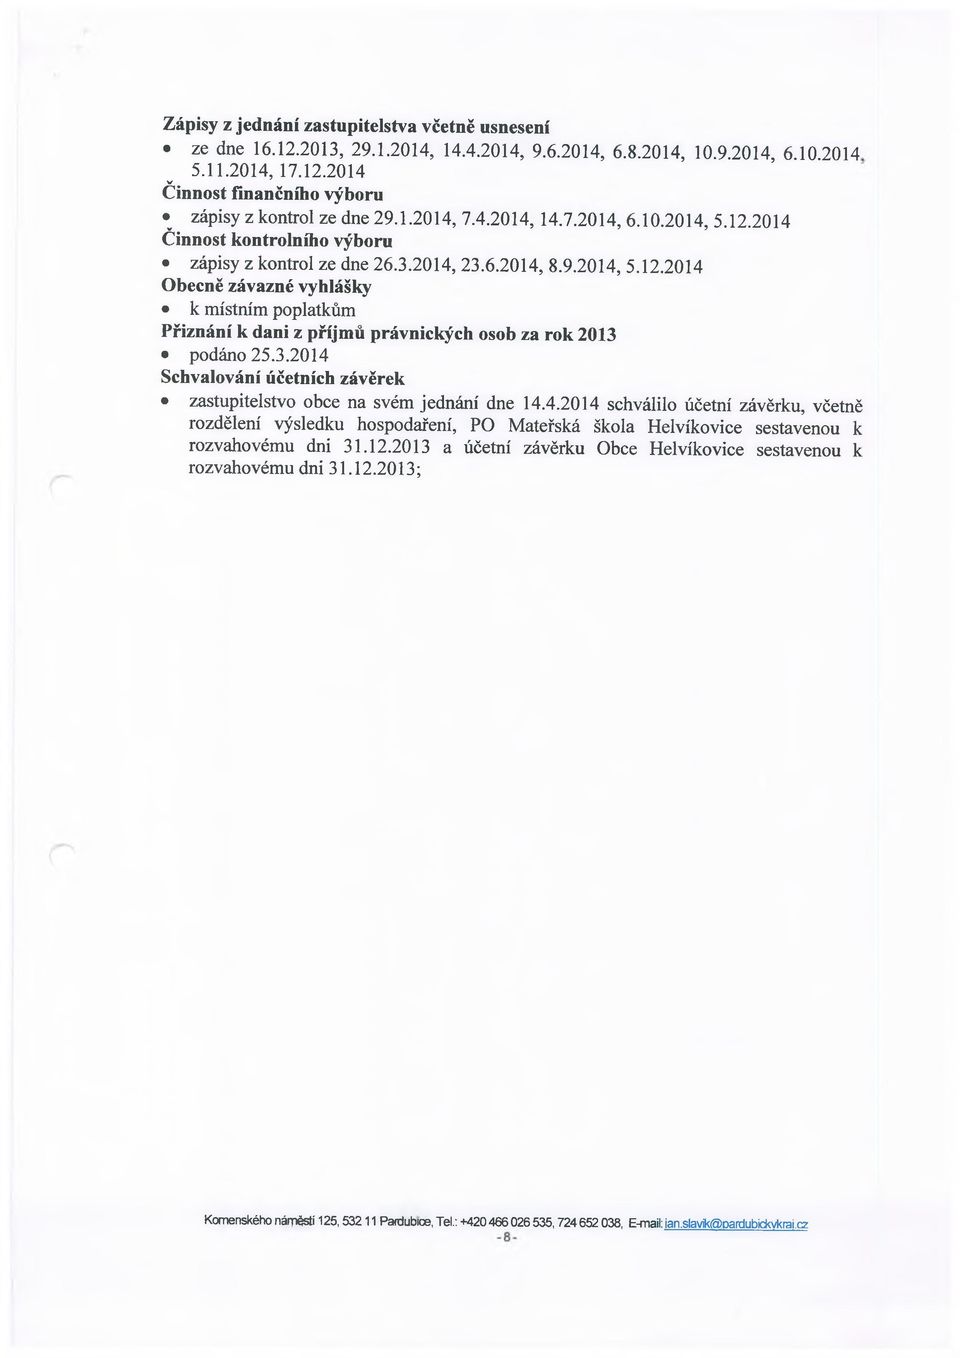 3.2014 Schvalování účetních závěrek zastupitelstvo obce na svém jednání dne 14.4.2014 schválilo účetní závěrku, včetně rozdělení výsledku hospodaření, PO Mateřská škola Helvíkovice sestavenou k rozvahovému dni 31.